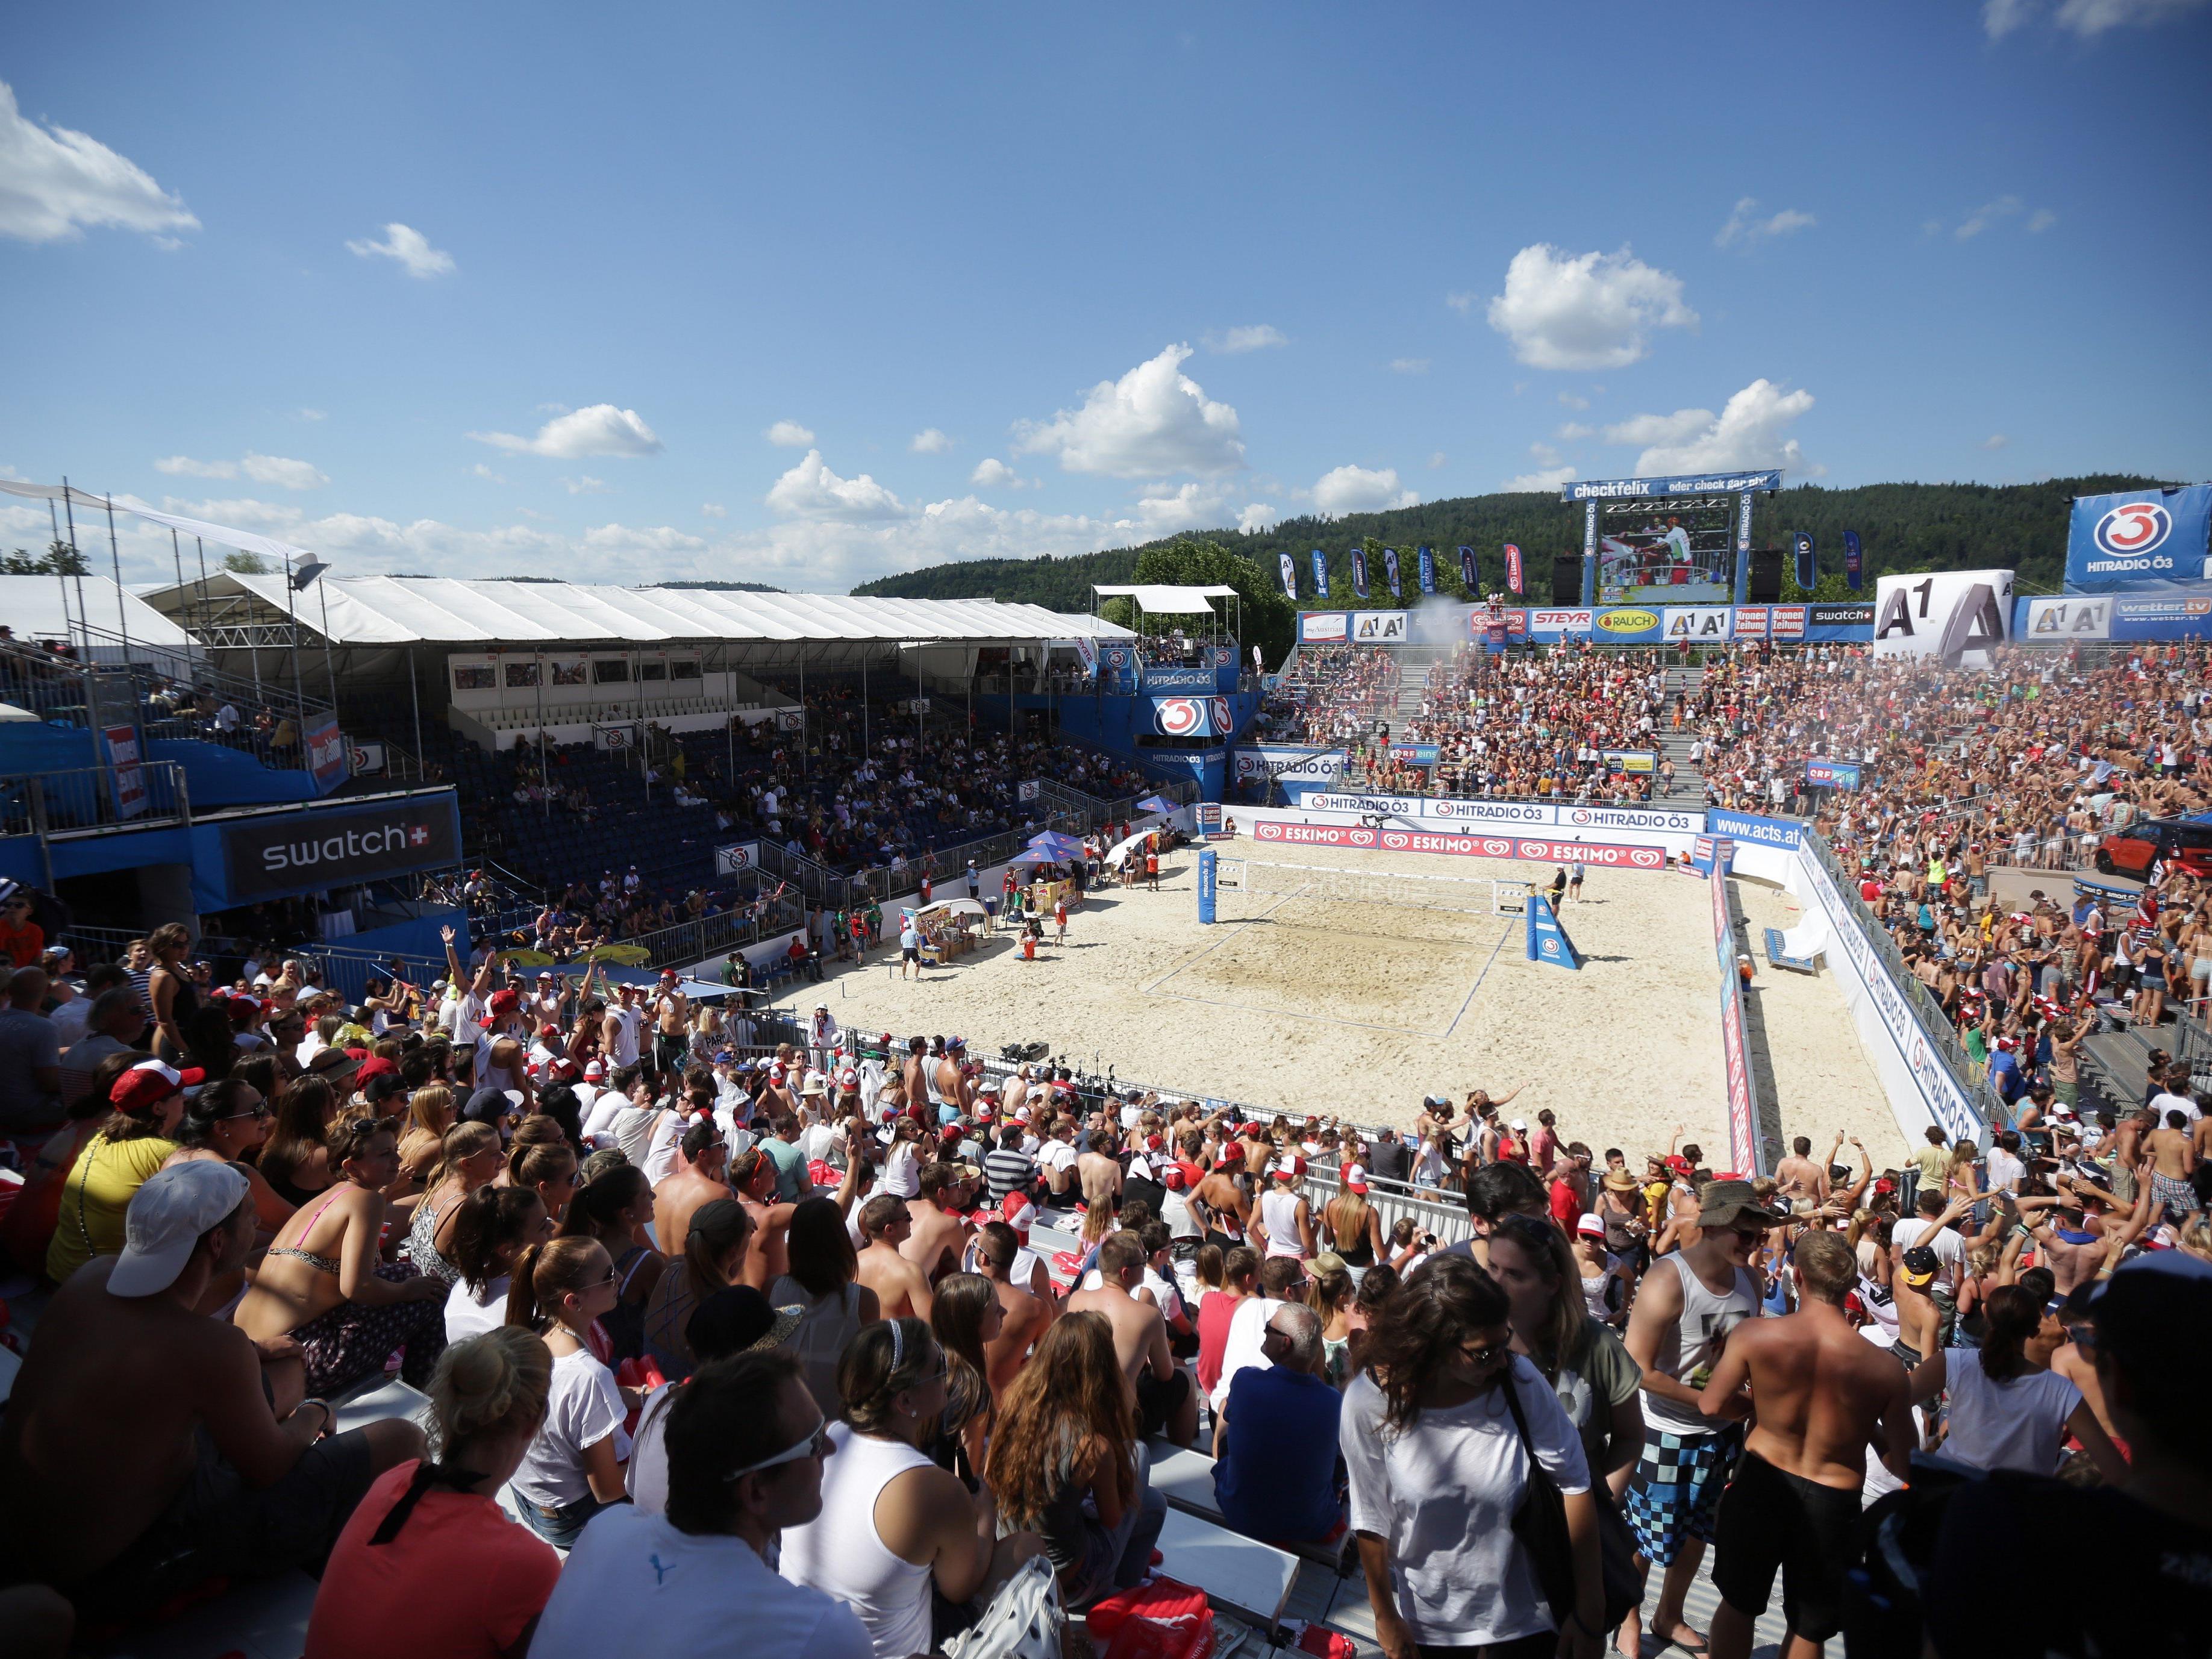 Anreise-Tipps zum Beach Volleyball Major in Klagenfurt 2016.